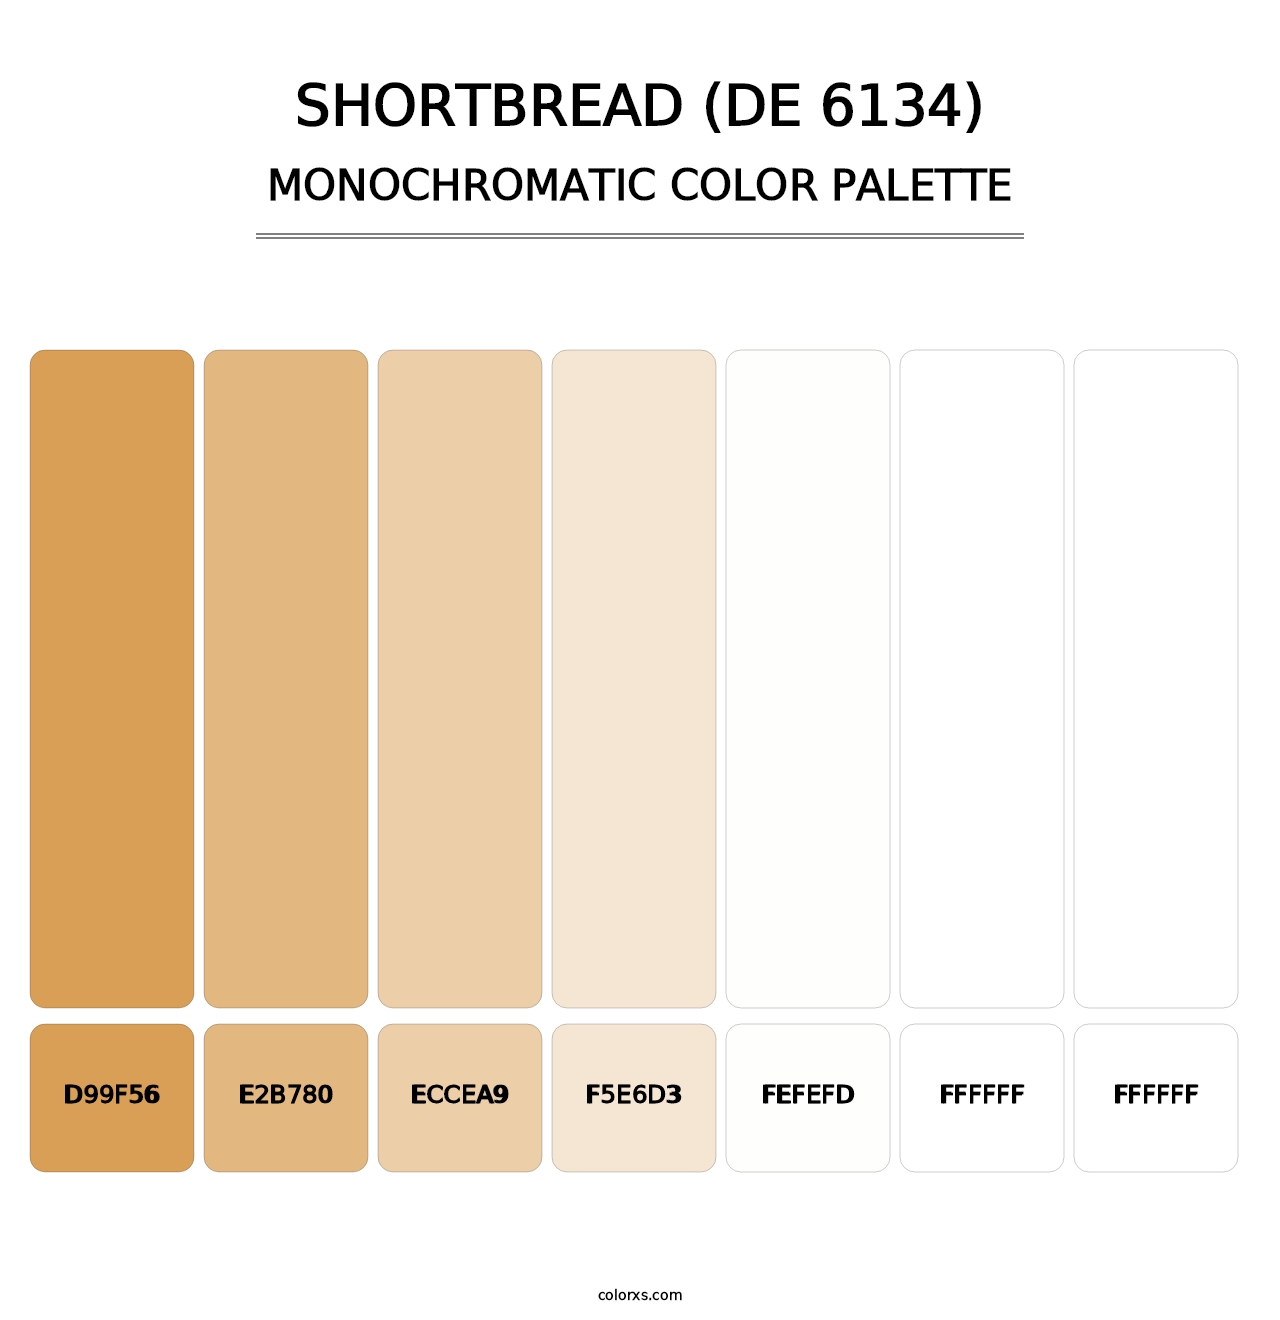 Shortbread (DE 6134) - Monochromatic Color Palette